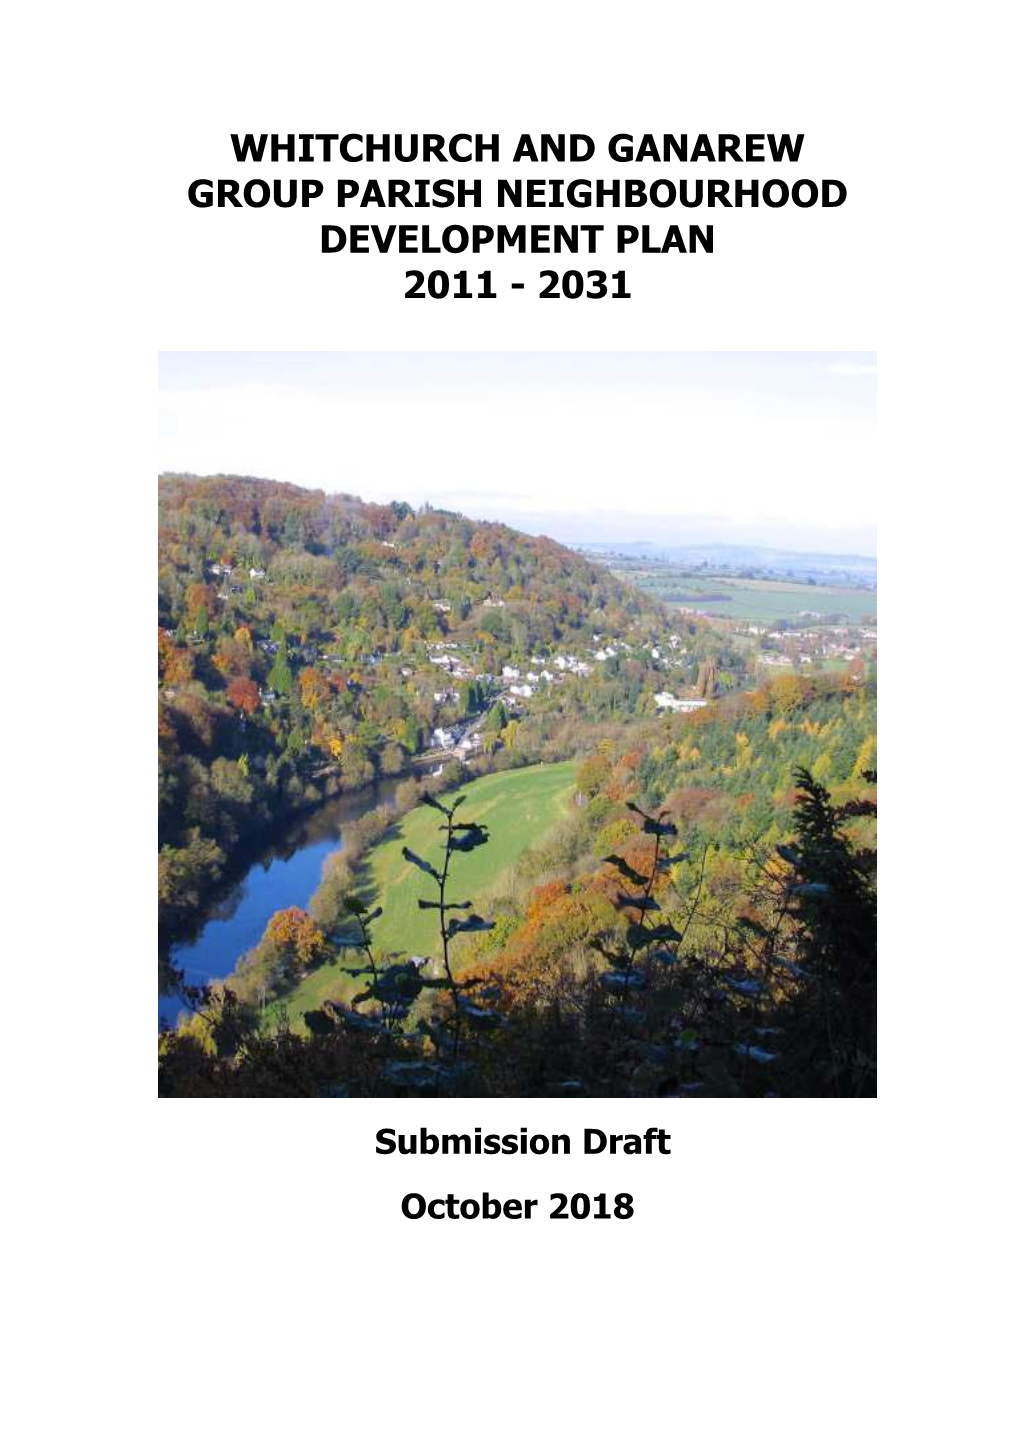 Whitchurch and Ganarew Neighbourhood Development Plan October 2018